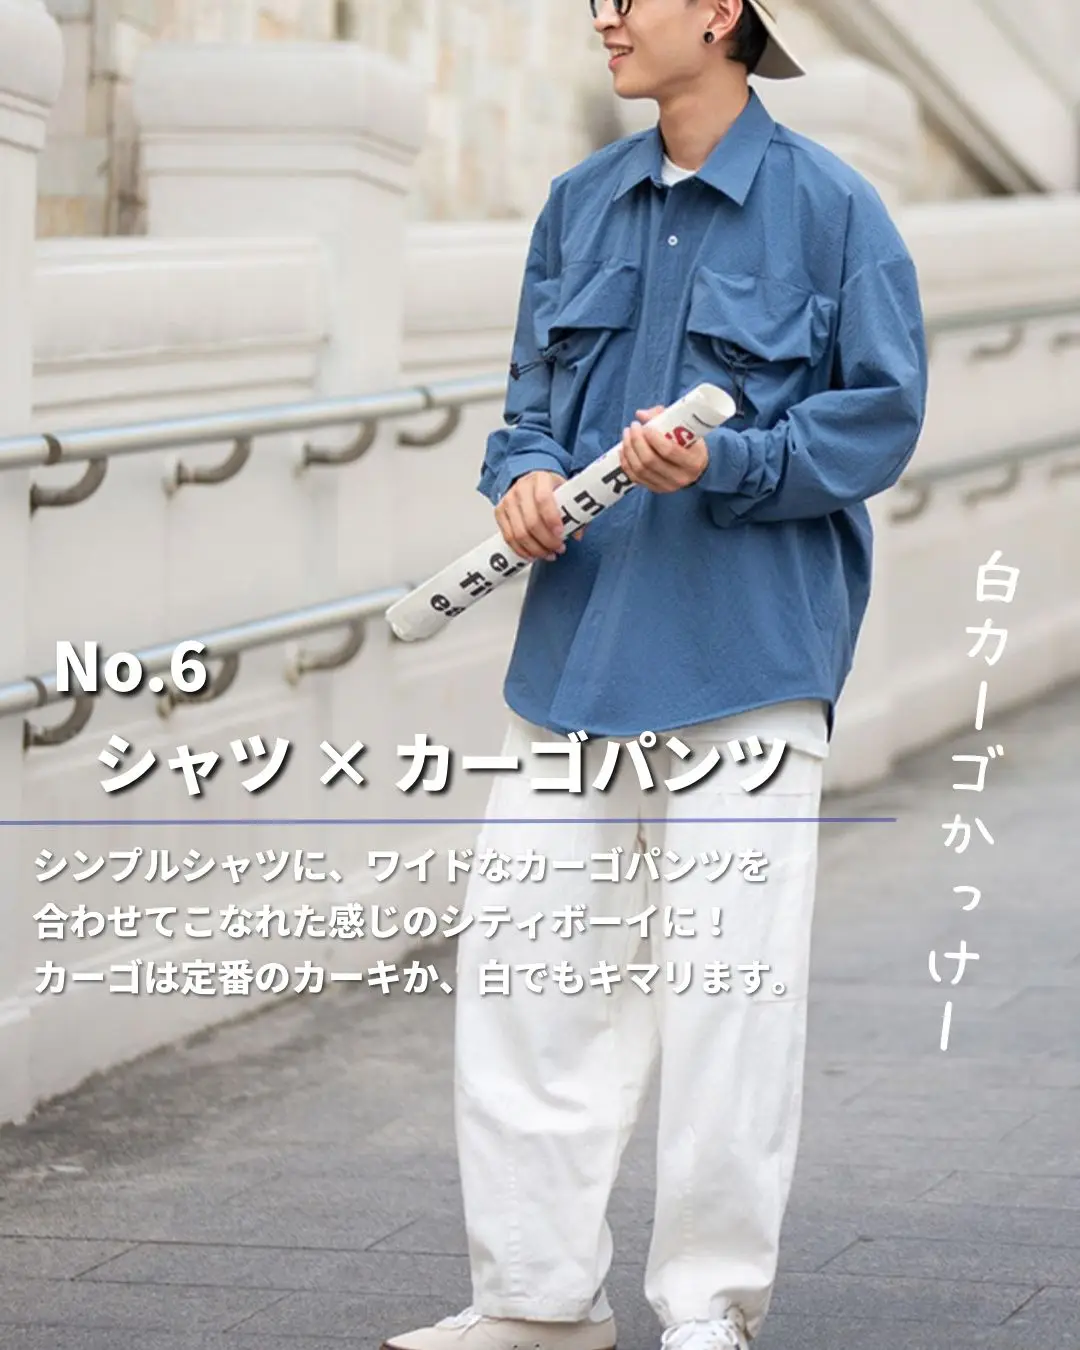 売れ筋ランキング c-boy style SET (No. 27)シティーボーイ シティー